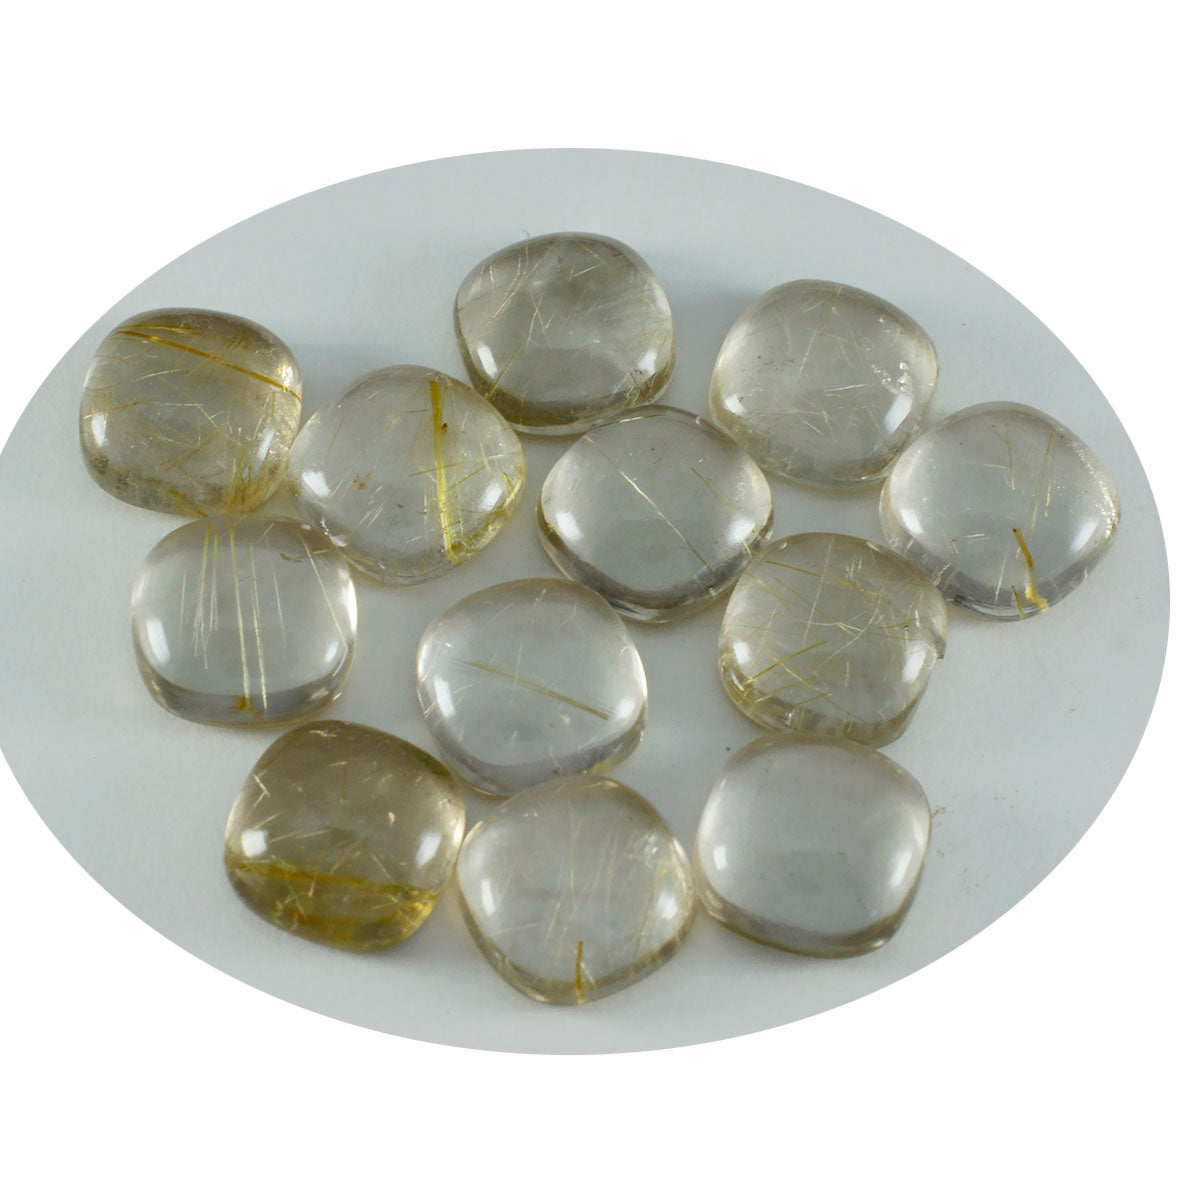 Riyogems – cabochon de quartz multi-rutile, 7x7mm, en forme de coussin, qualité attrayante, gemme en vrac, 1 pièce